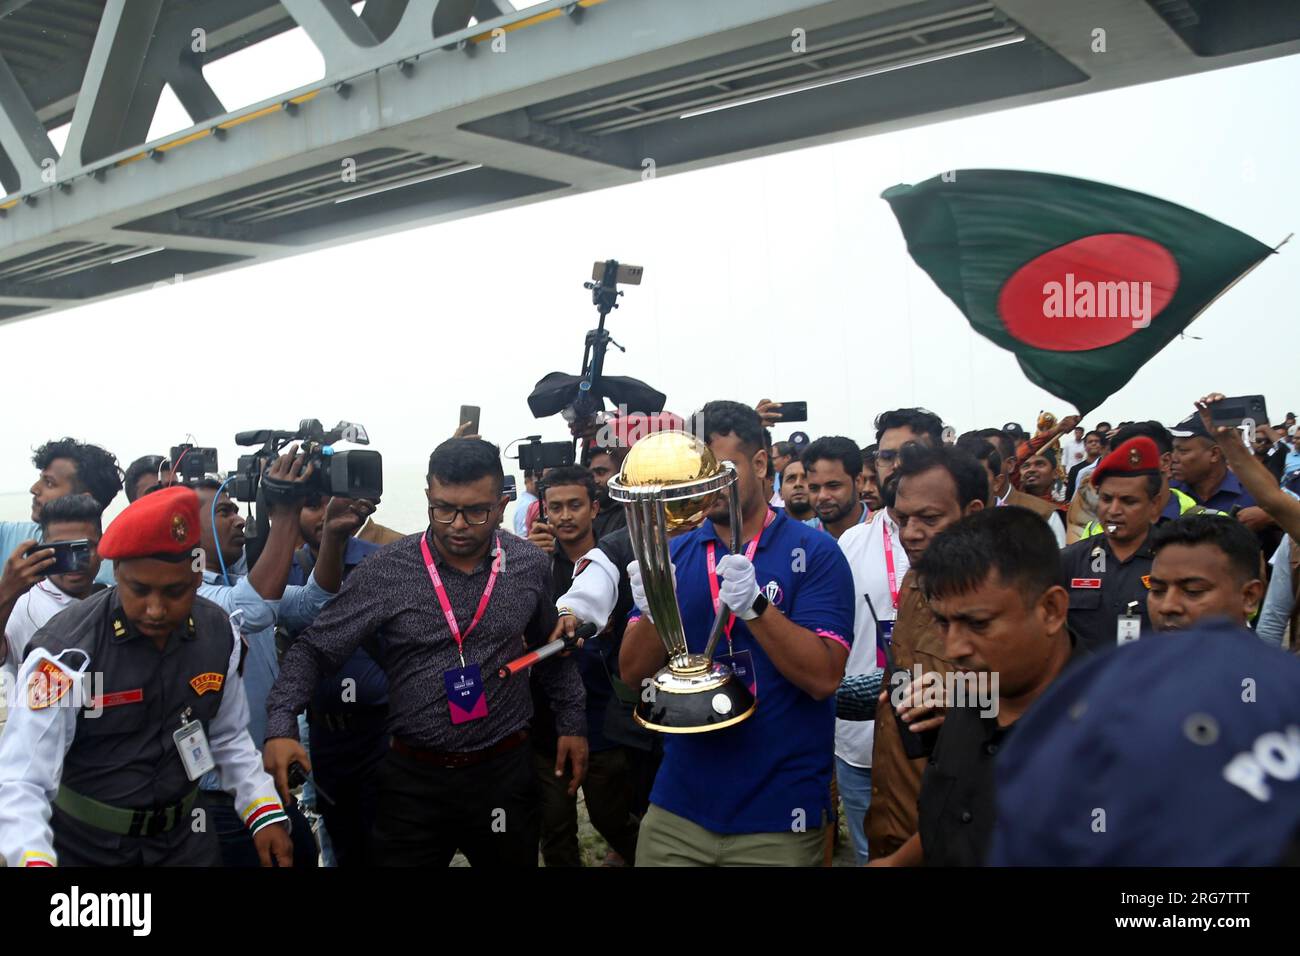 ICC Cricket World Cup 2023 Trophy Tour è arrivato in Bangladesh. Il prestigioso trofeo è destinato a visitare varie località del paese Foto Stock